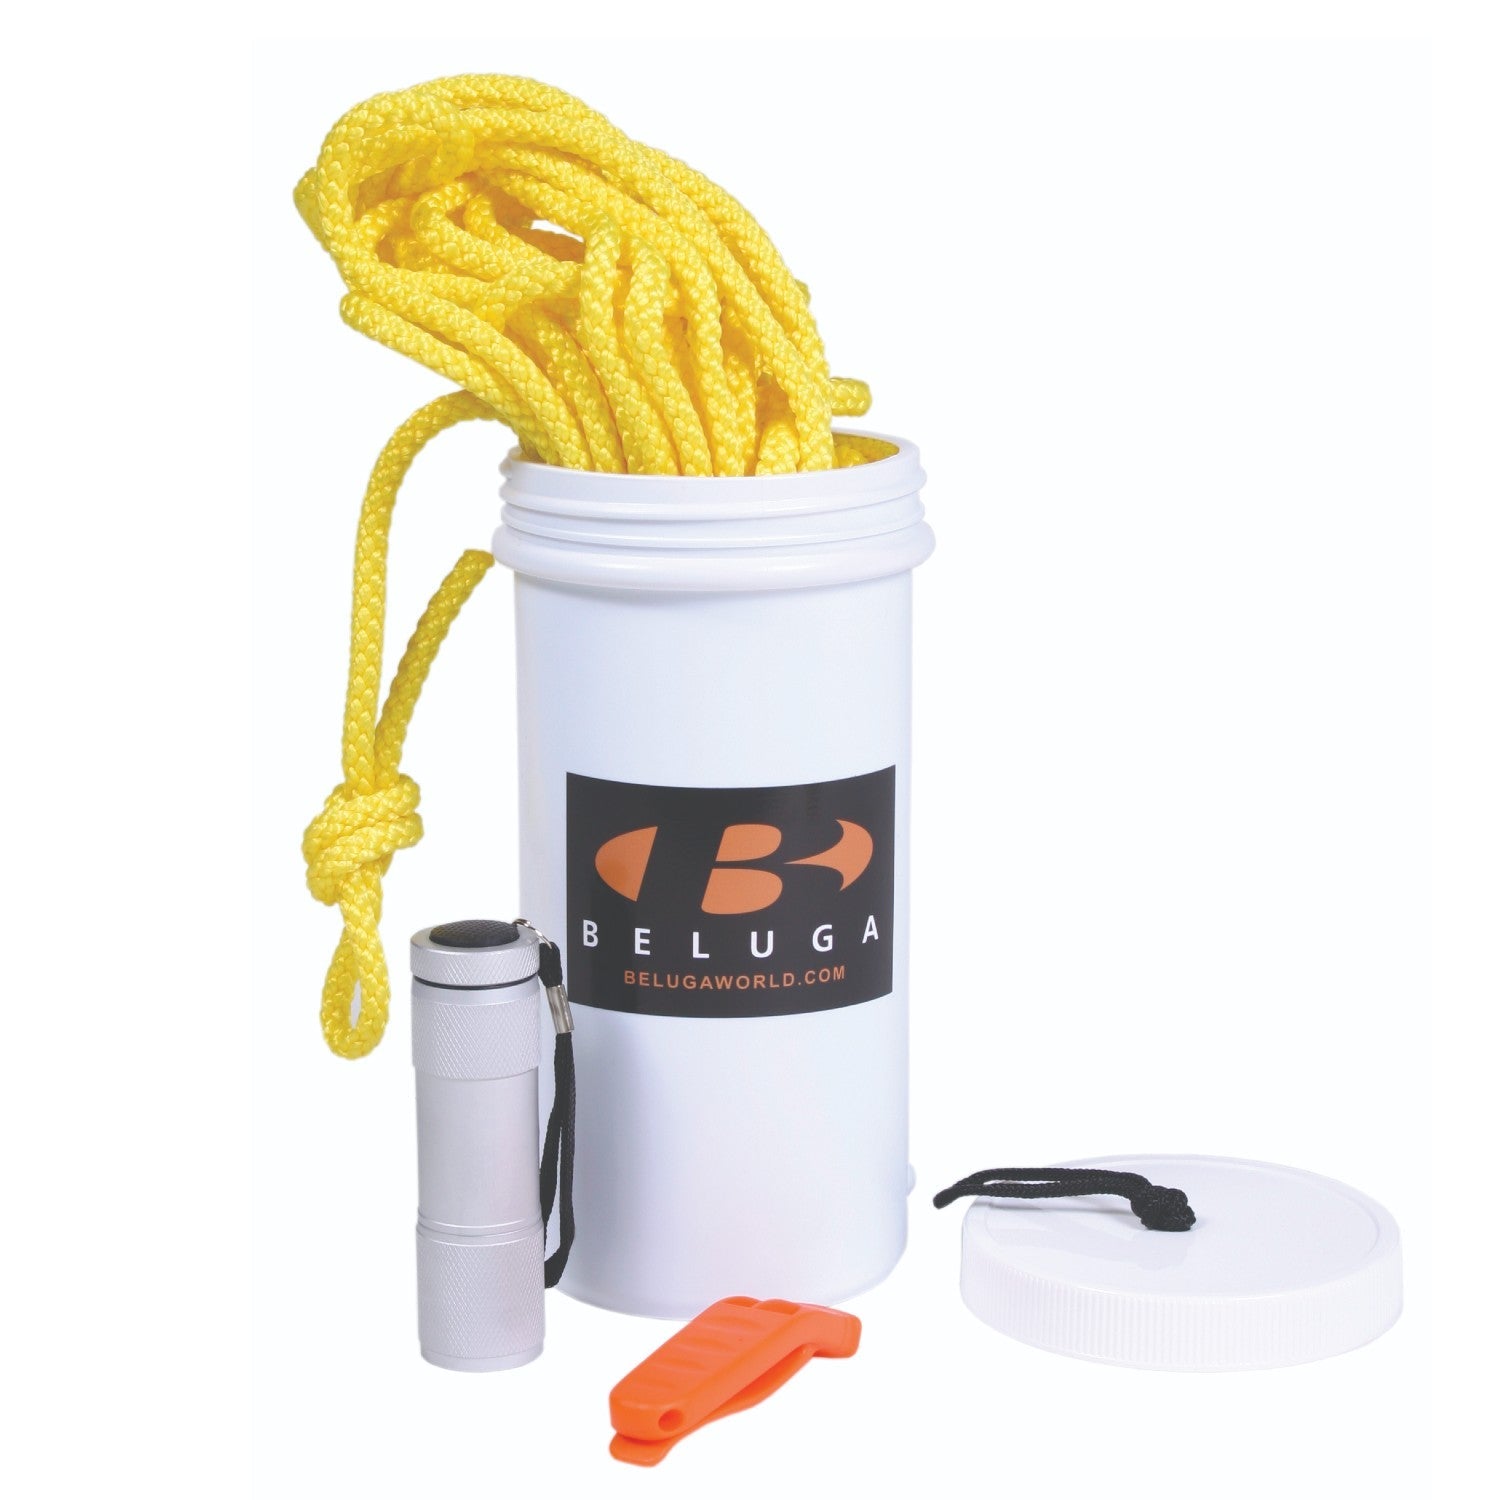 Beluga Basic Safety Kit